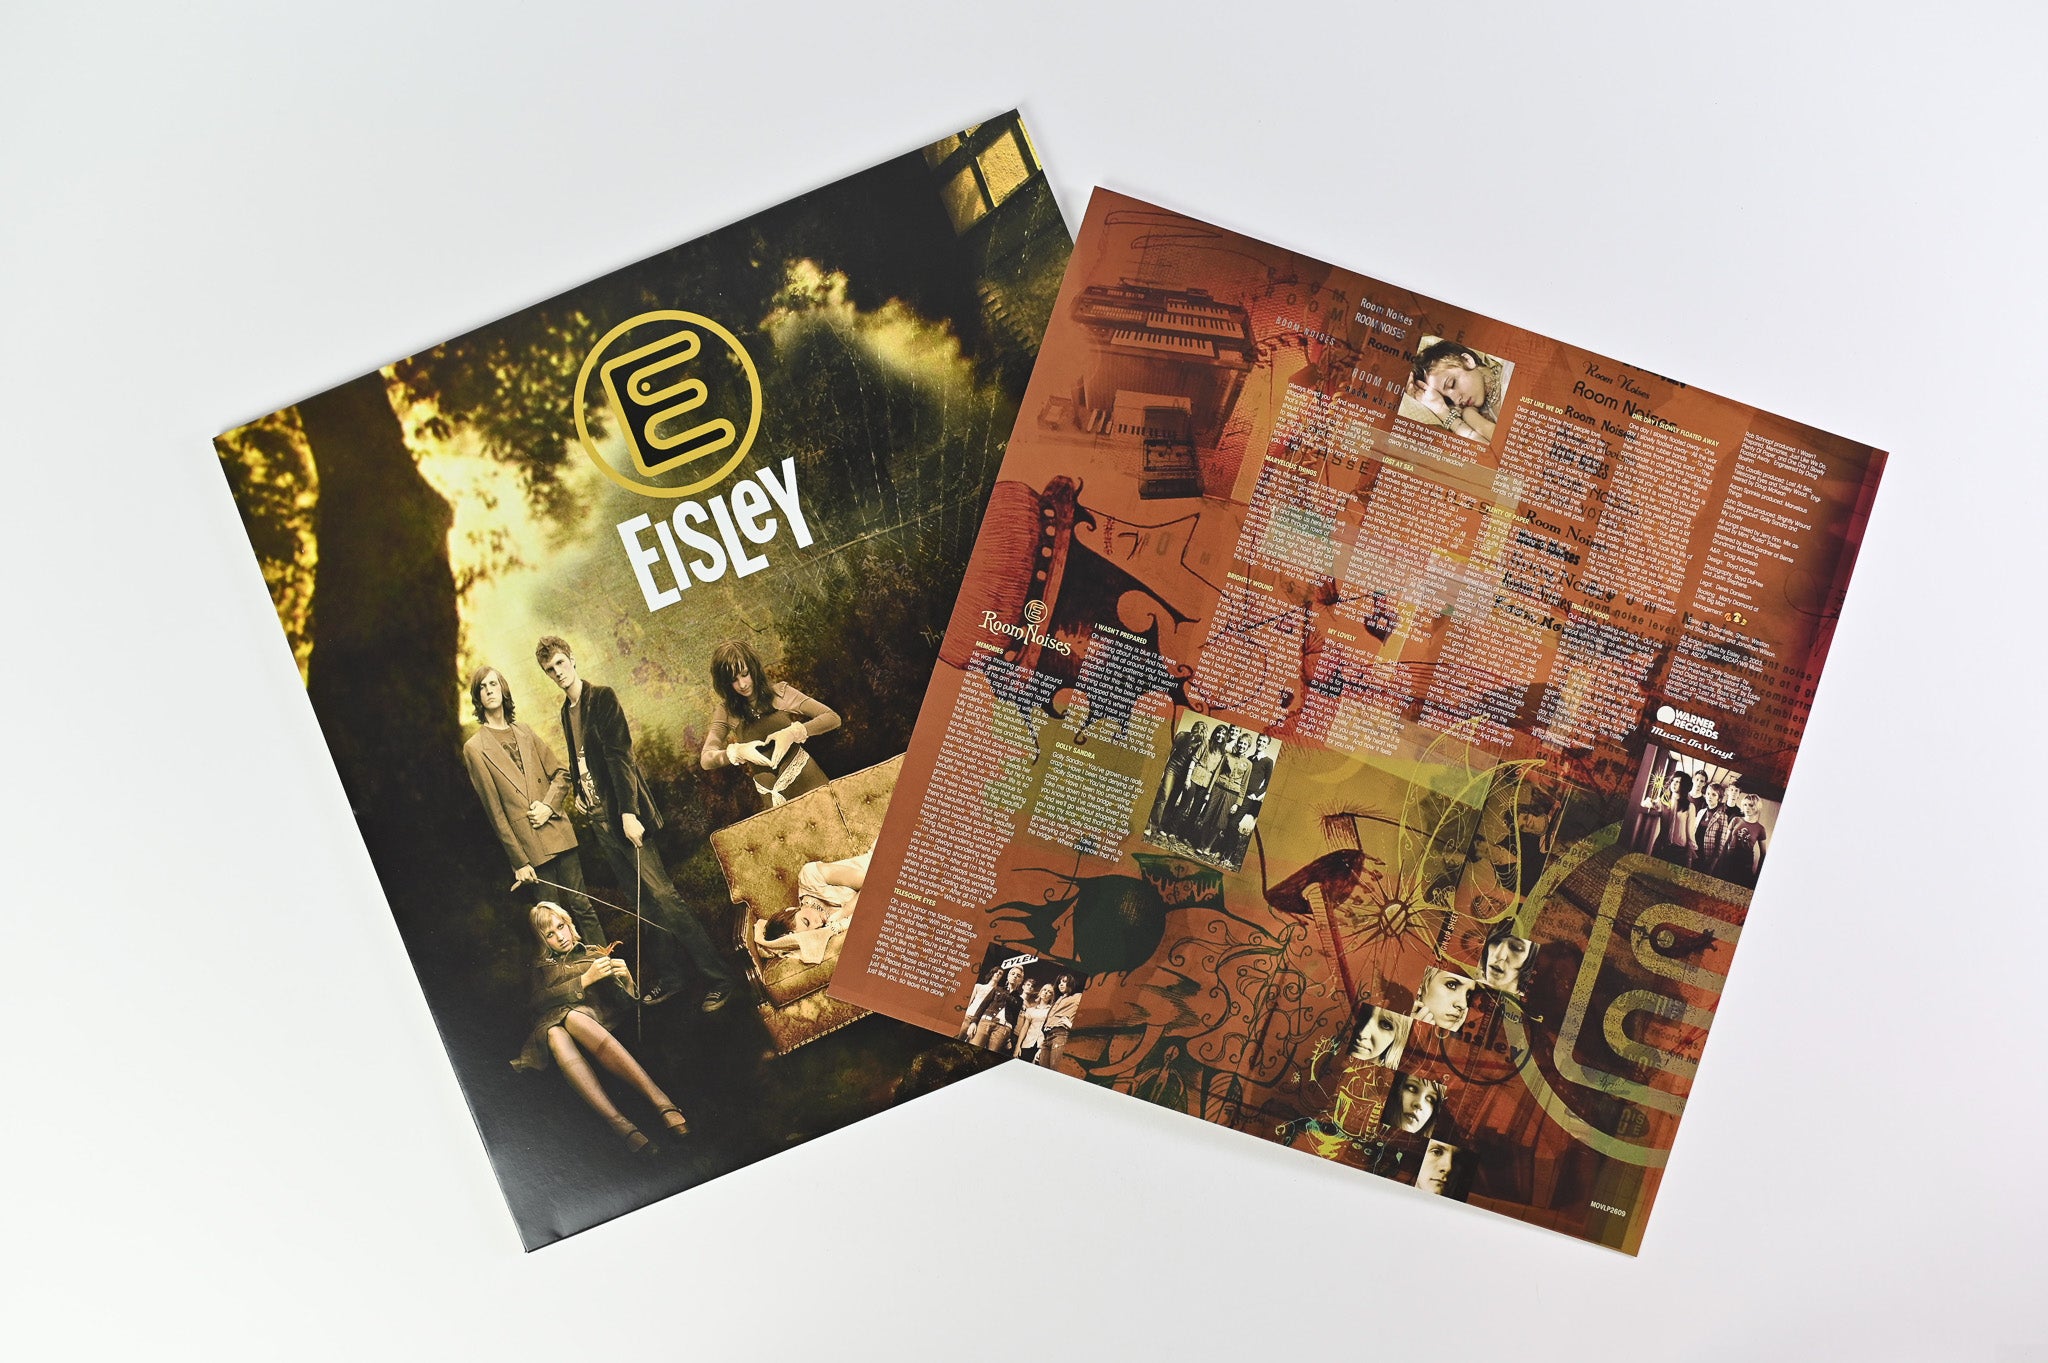 Eisley - Room Noises on Music on Vinyl Ltd Numbered Gold Vinyl Reissue